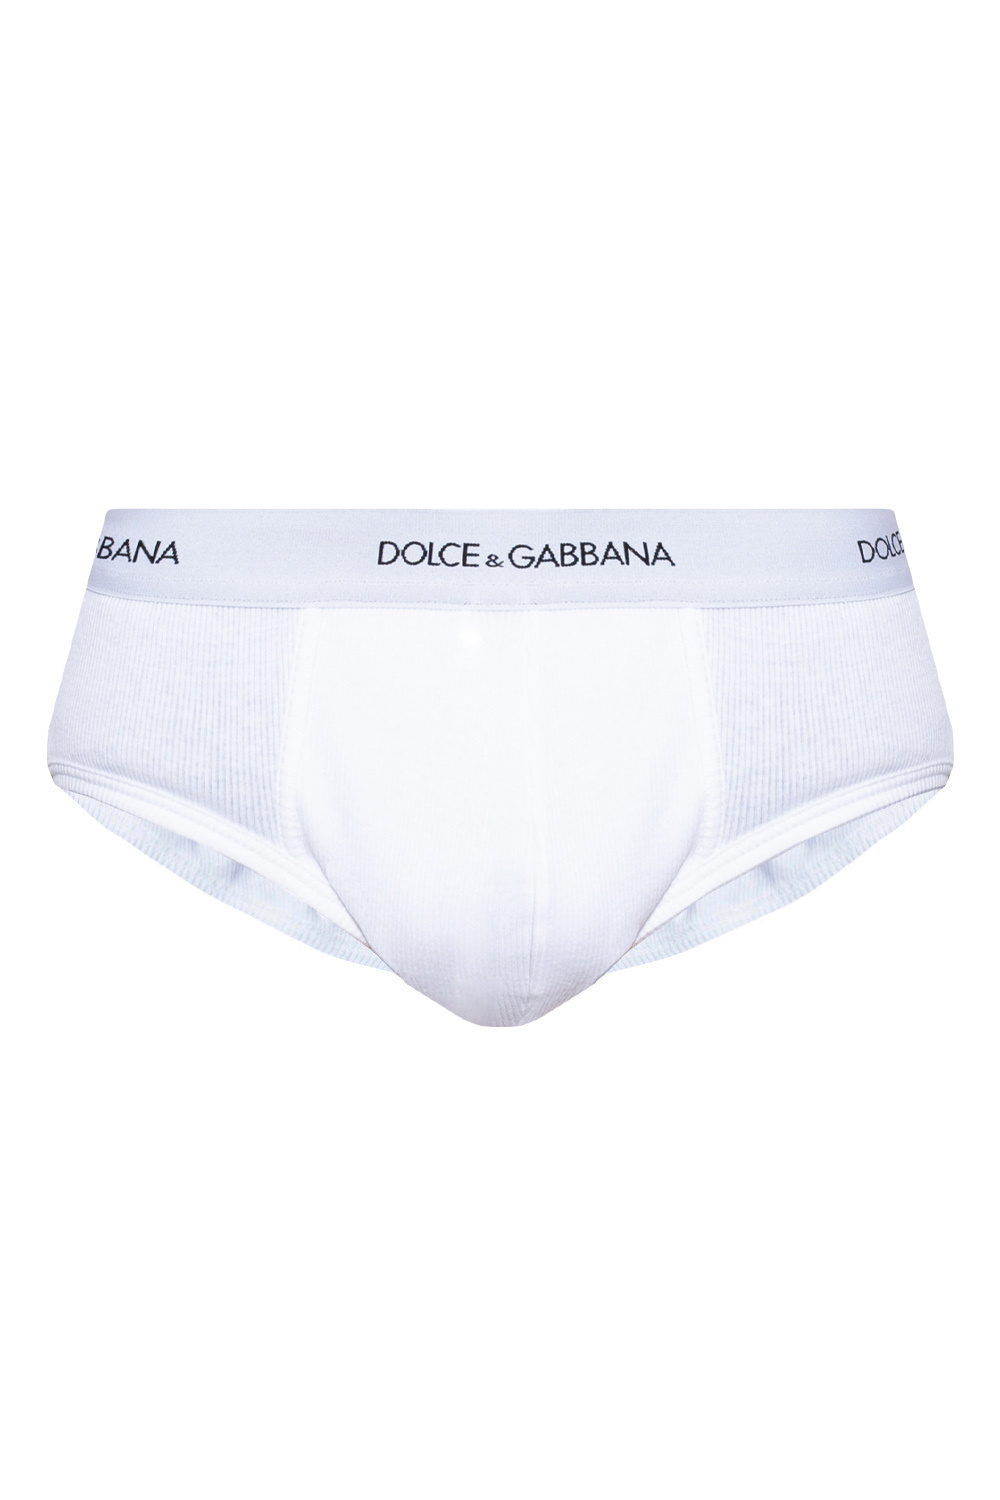 Dolce & Gabbana Ribbed briefs